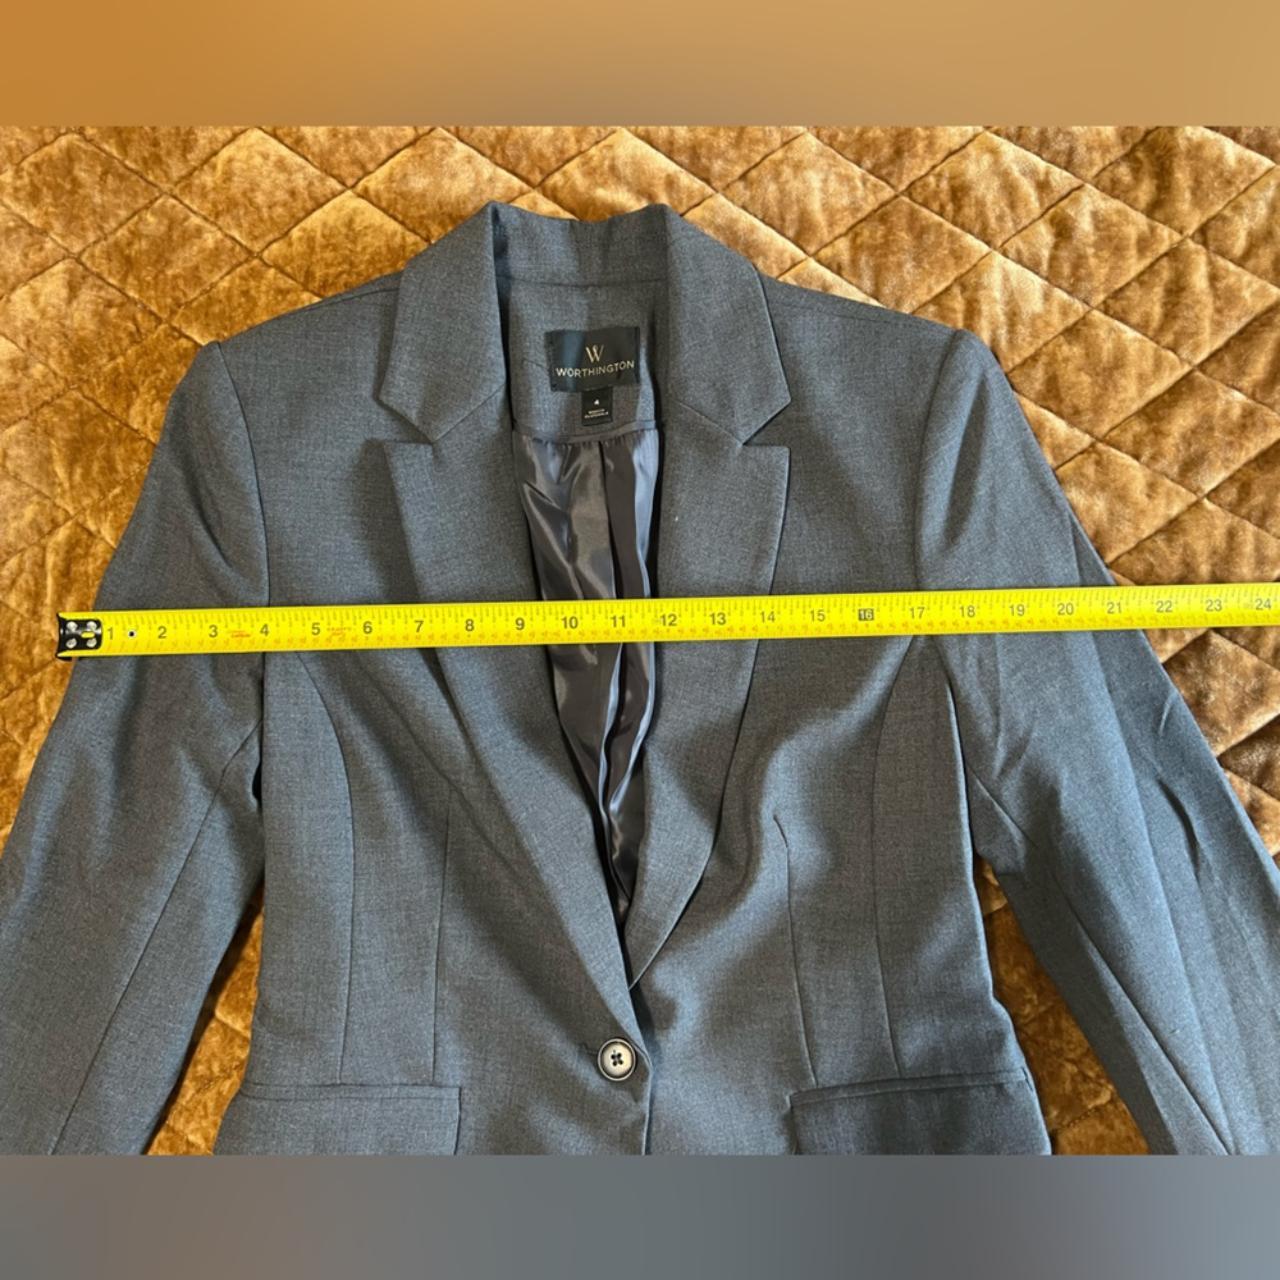 Grey Worthington Suit Jacket Blazer **NWOT New... - Depop